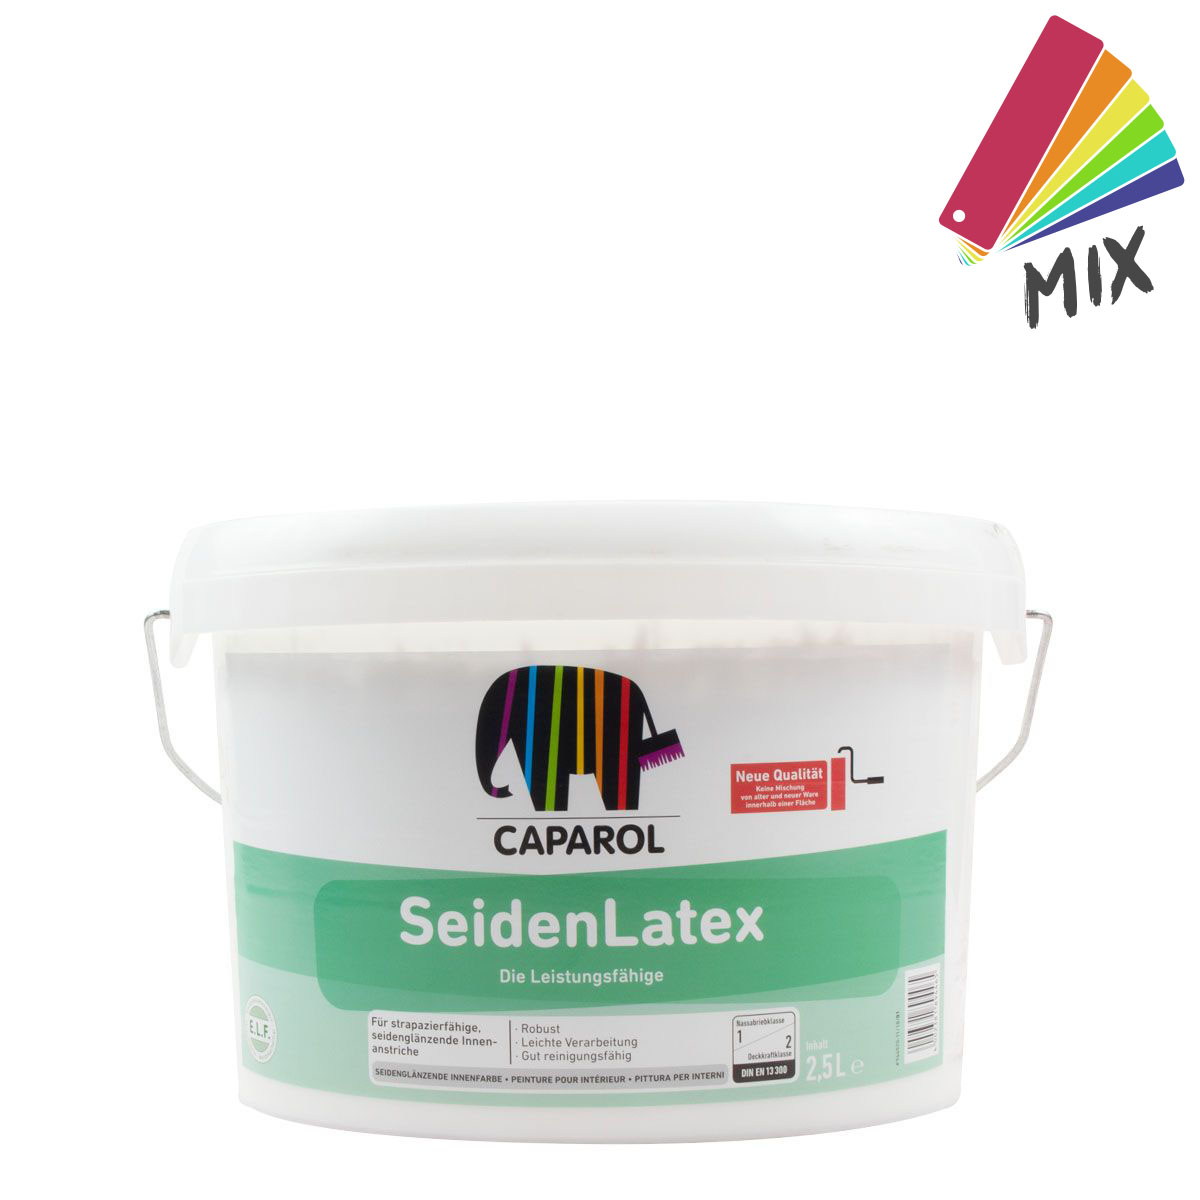 Caparol SeidenLatex MIX, trapazierfähige Innenfarbe 2,5l MIX PG A, HBW 69-40